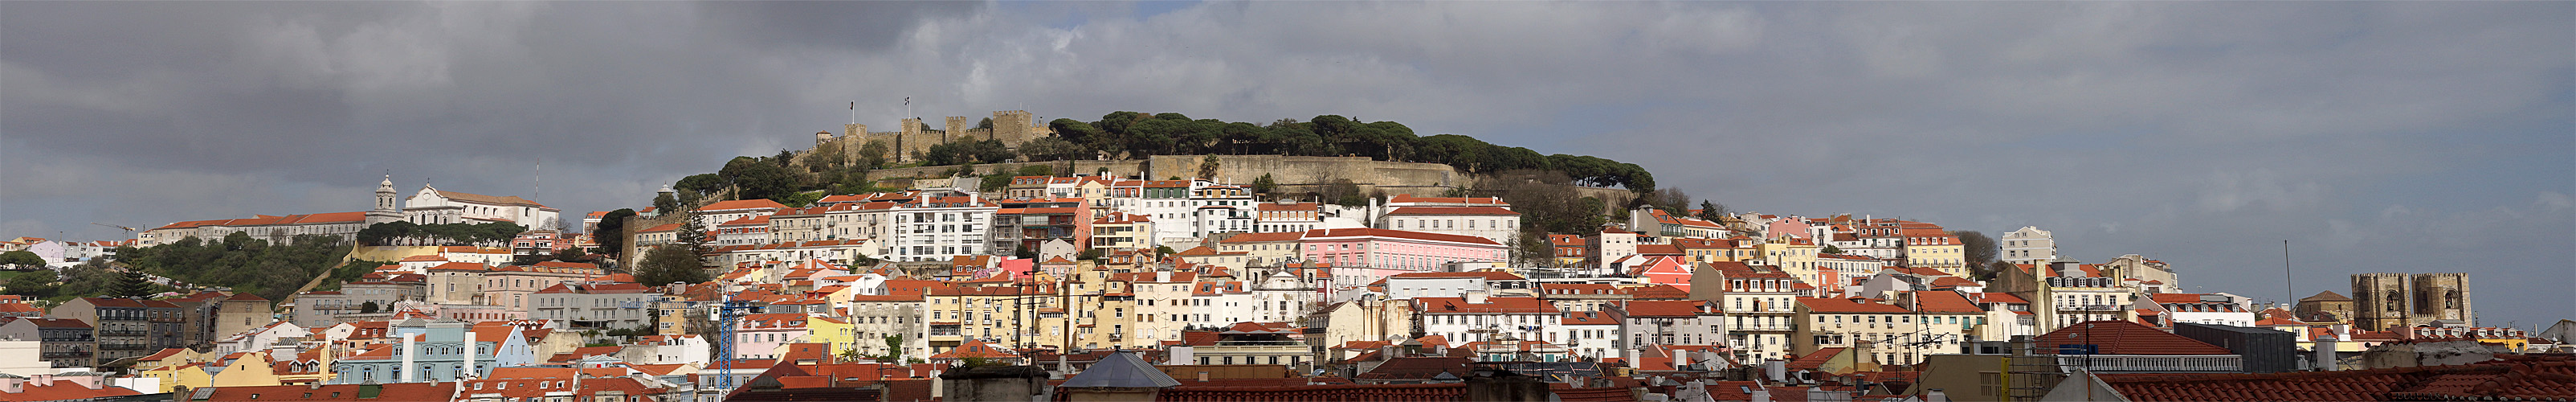 LISBONNE - photo panoramique du couvent [q]Nossa Senhora de Graça[q], du [q]Castelo de São Jorge[q] et de la cathédrale [q]Sé Patriarcal[q]